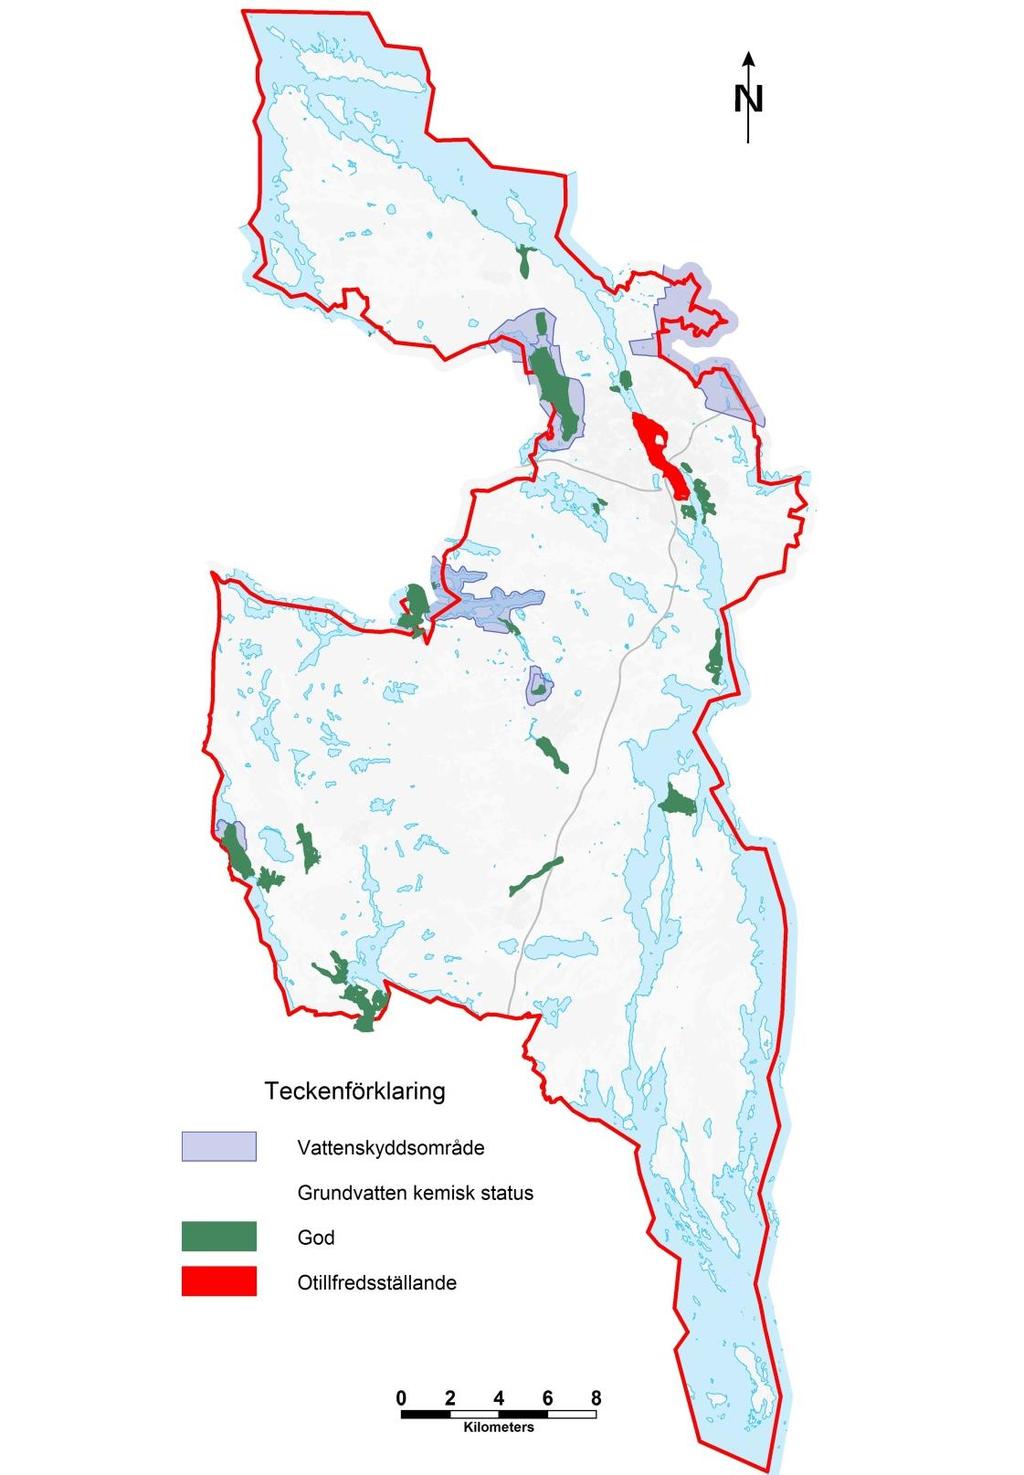 Grundvattenförekomster I Södertälje kommun finns 25 st grundvattenförekomster.